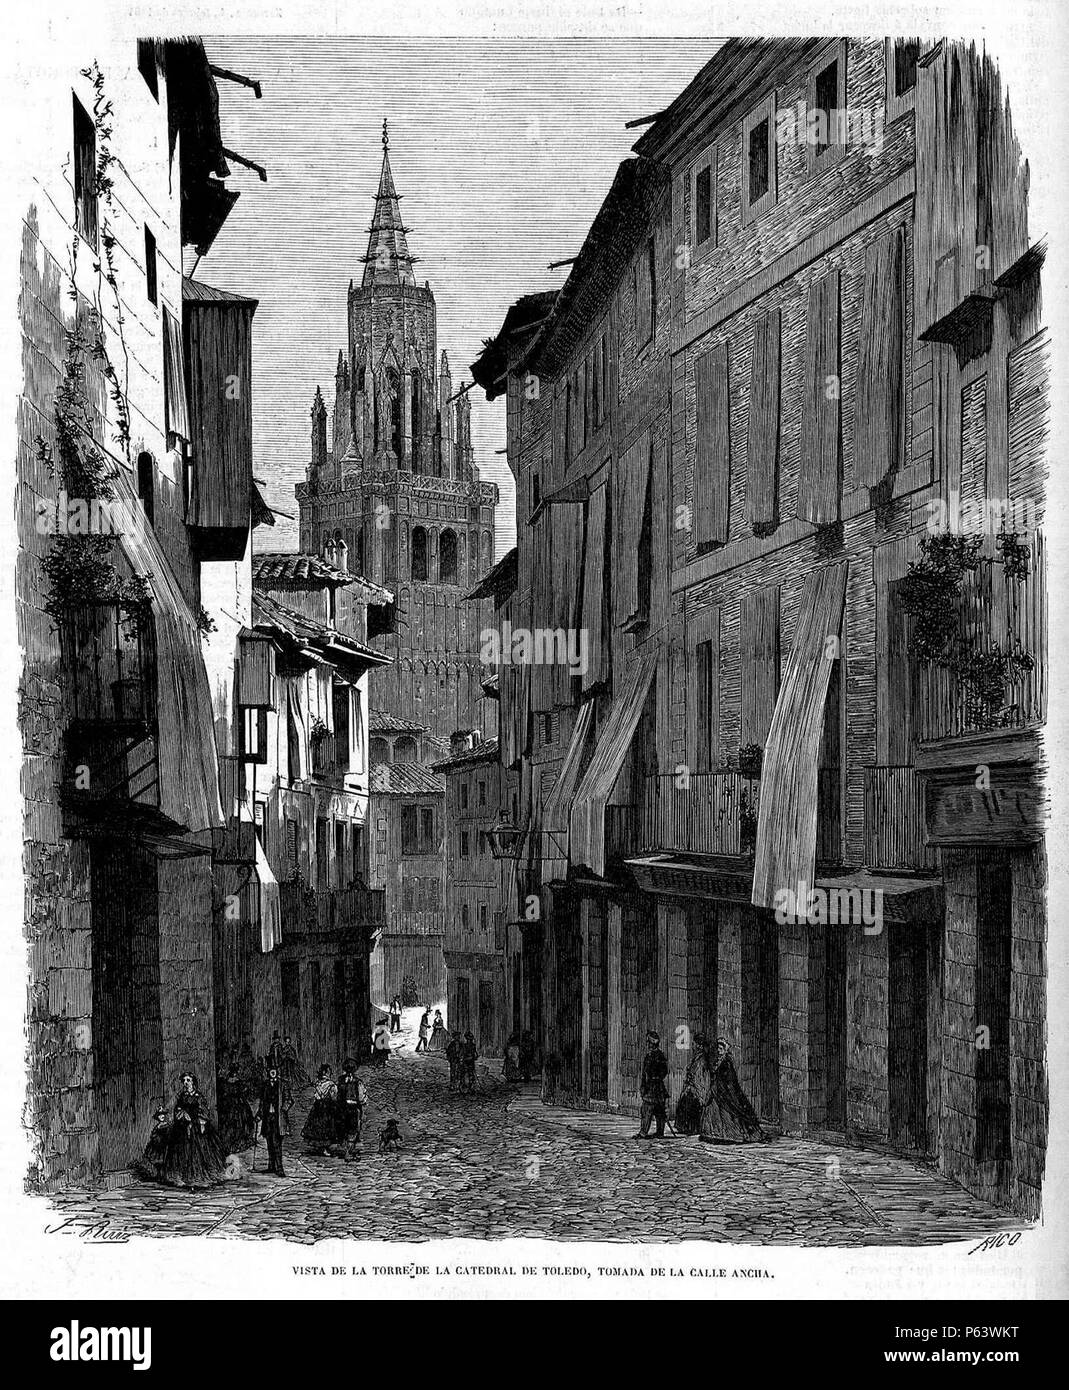 1864-03-20, El Museo Universal, Vista de la torre de la catedral de Toledo, tomada desde la calle Ancha, Ruiz. Stock Photo